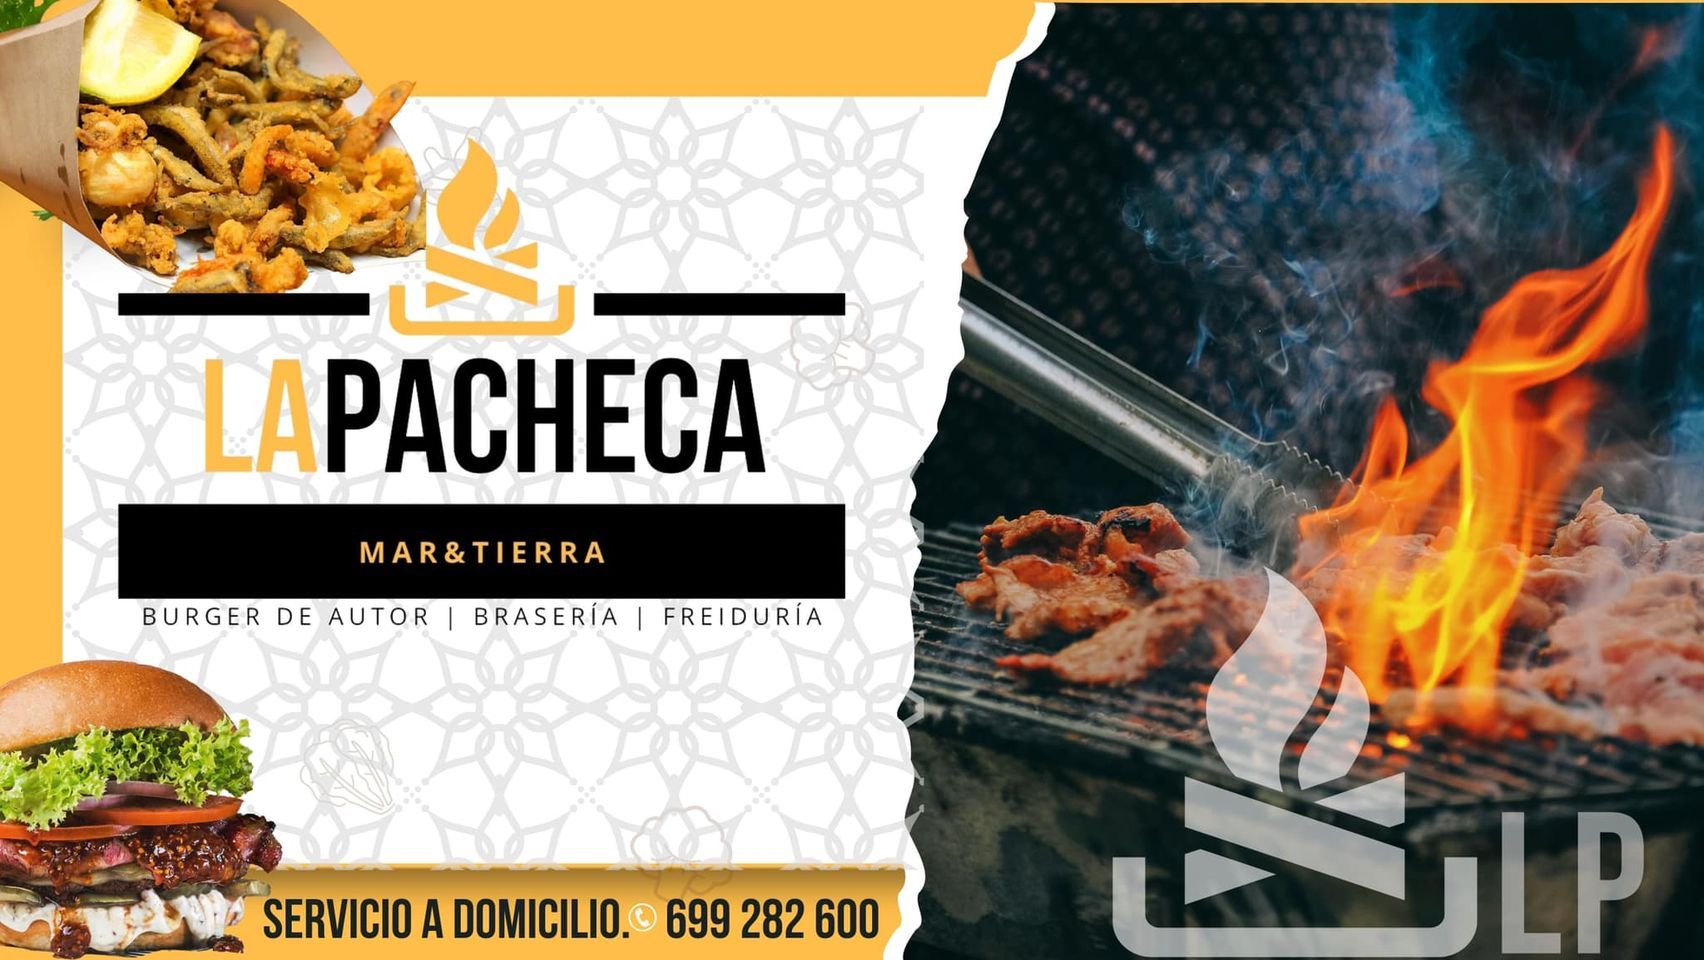 Cartel de La Pacheca, restaurante de la Plaza de Bruselas.